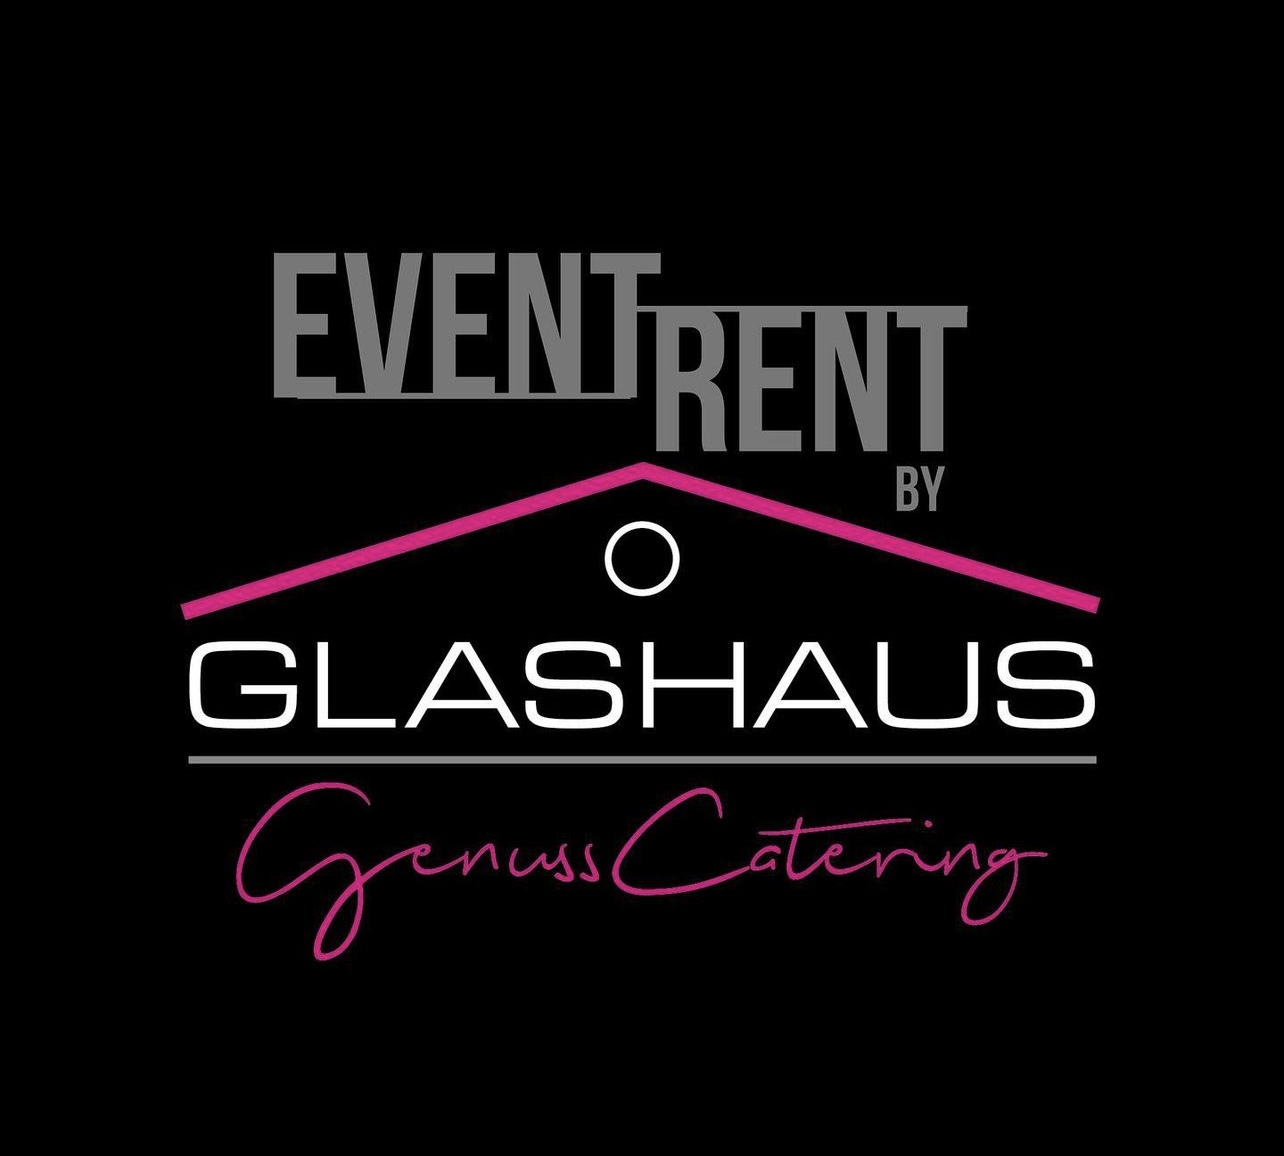 event rent glashaus